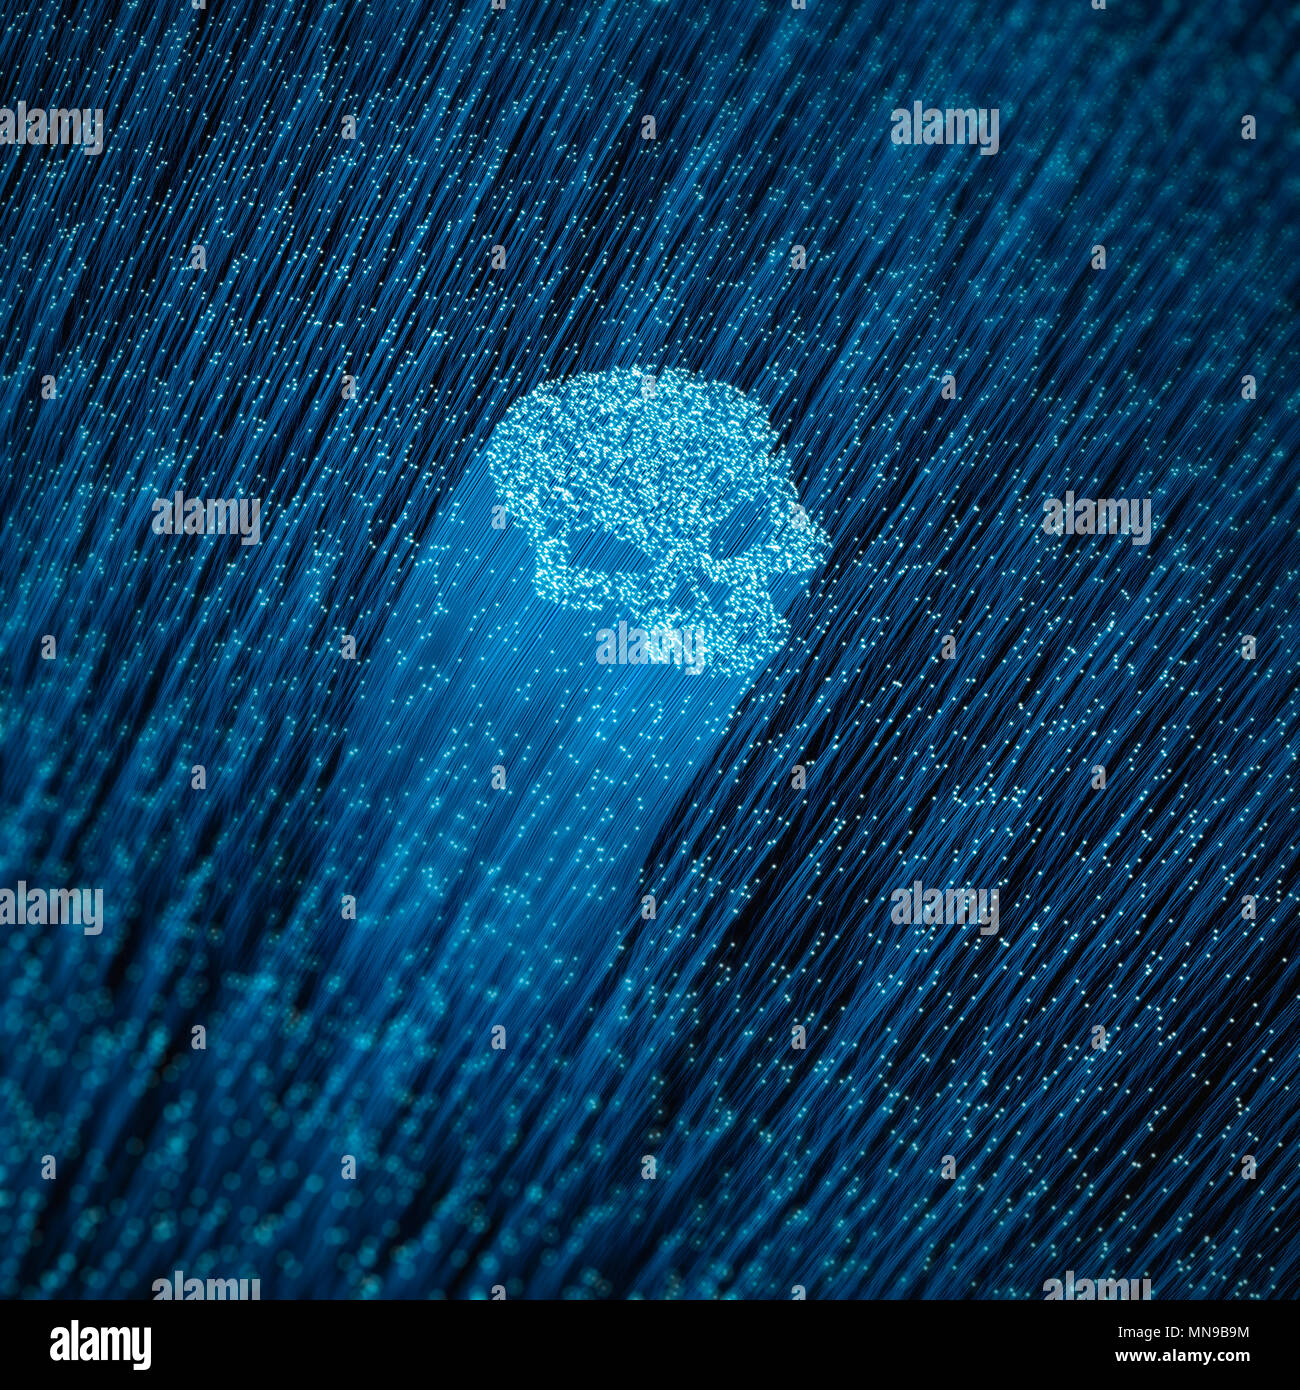 Lwl-Computer virus Konzept-/3D-Darstellung der glühenden optische Fasern bilden Schädel Form Stockfoto